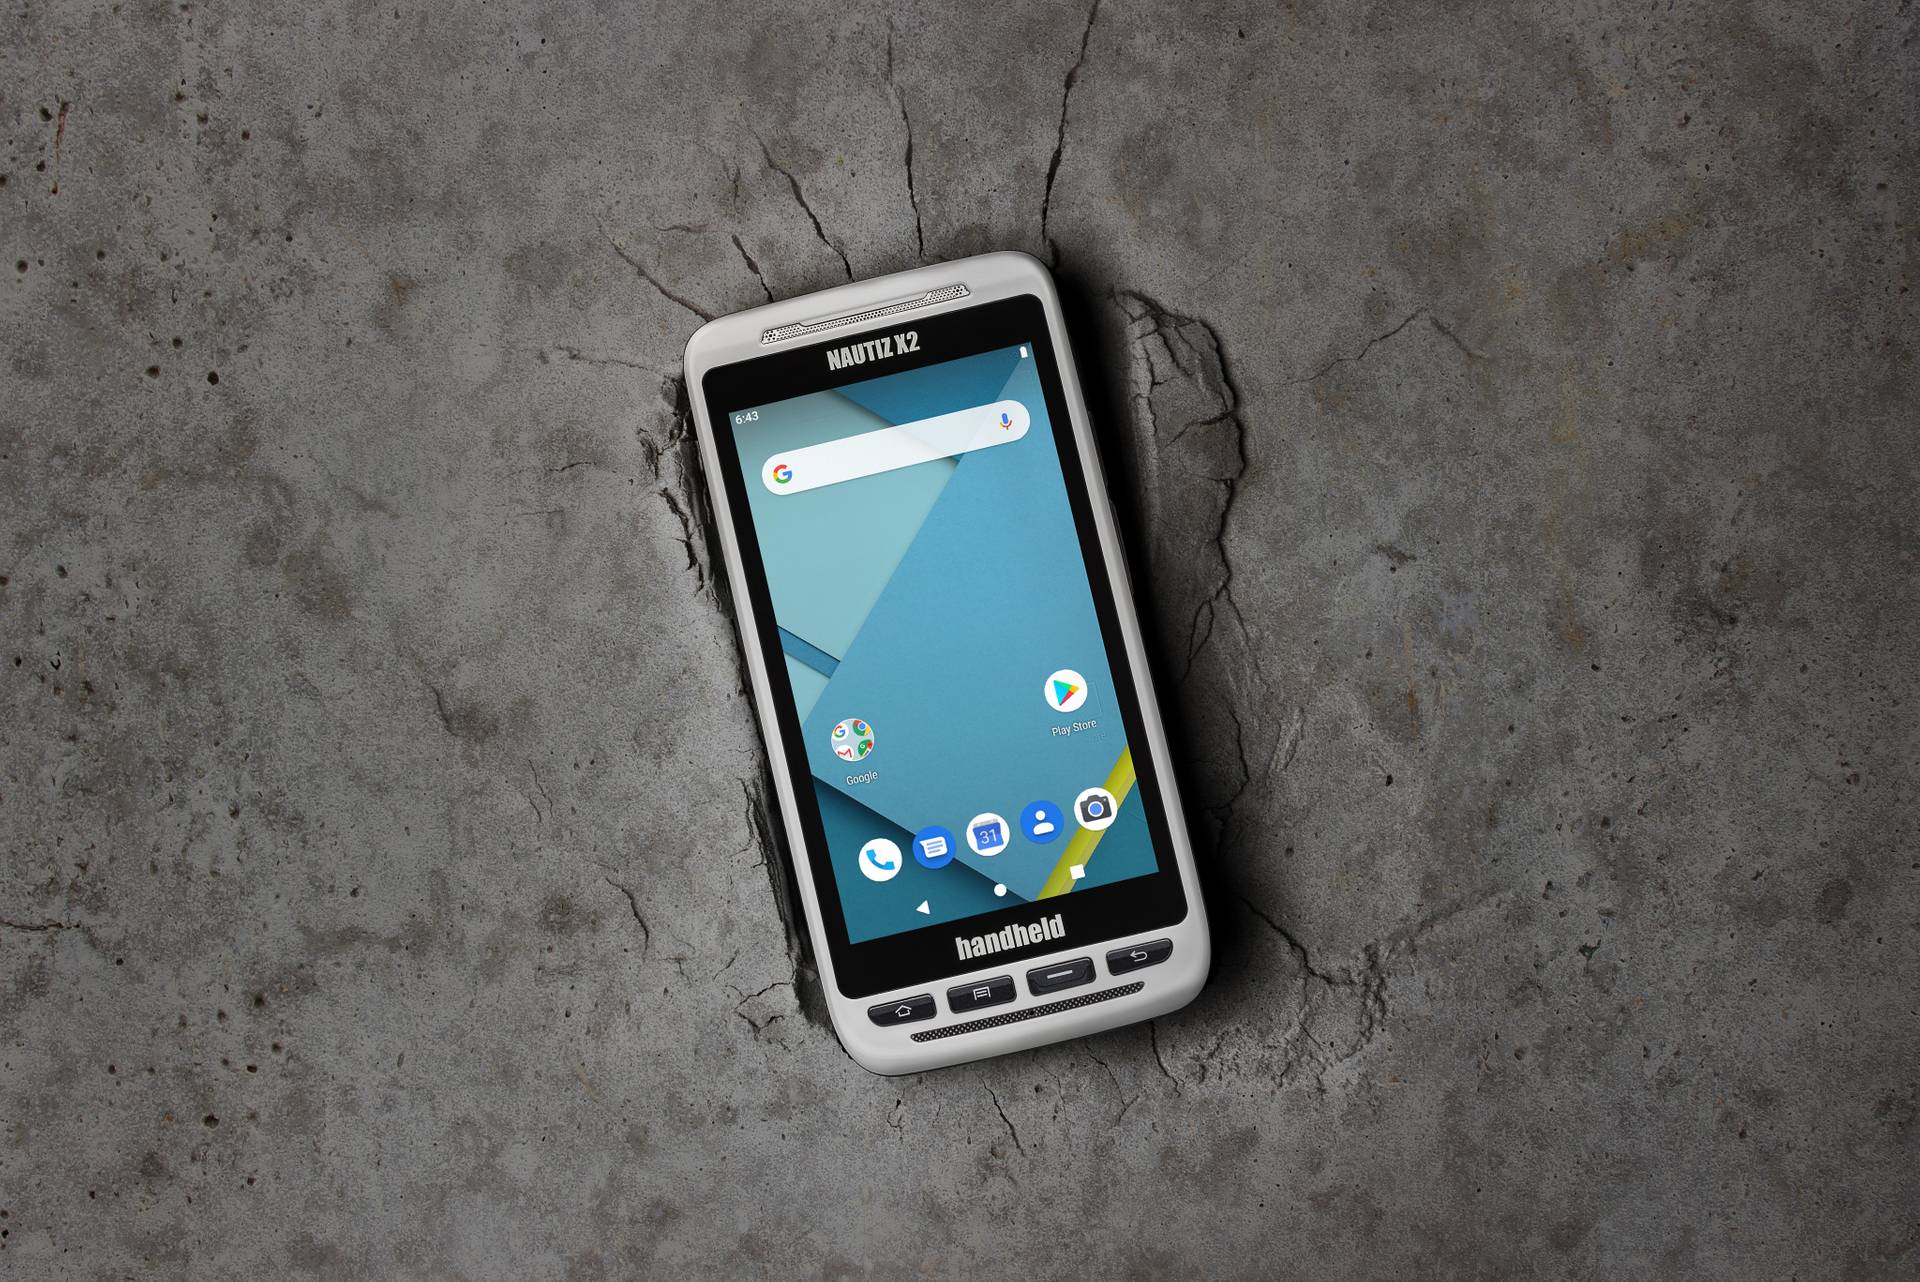 Nautiz x2 Android rugged handheld